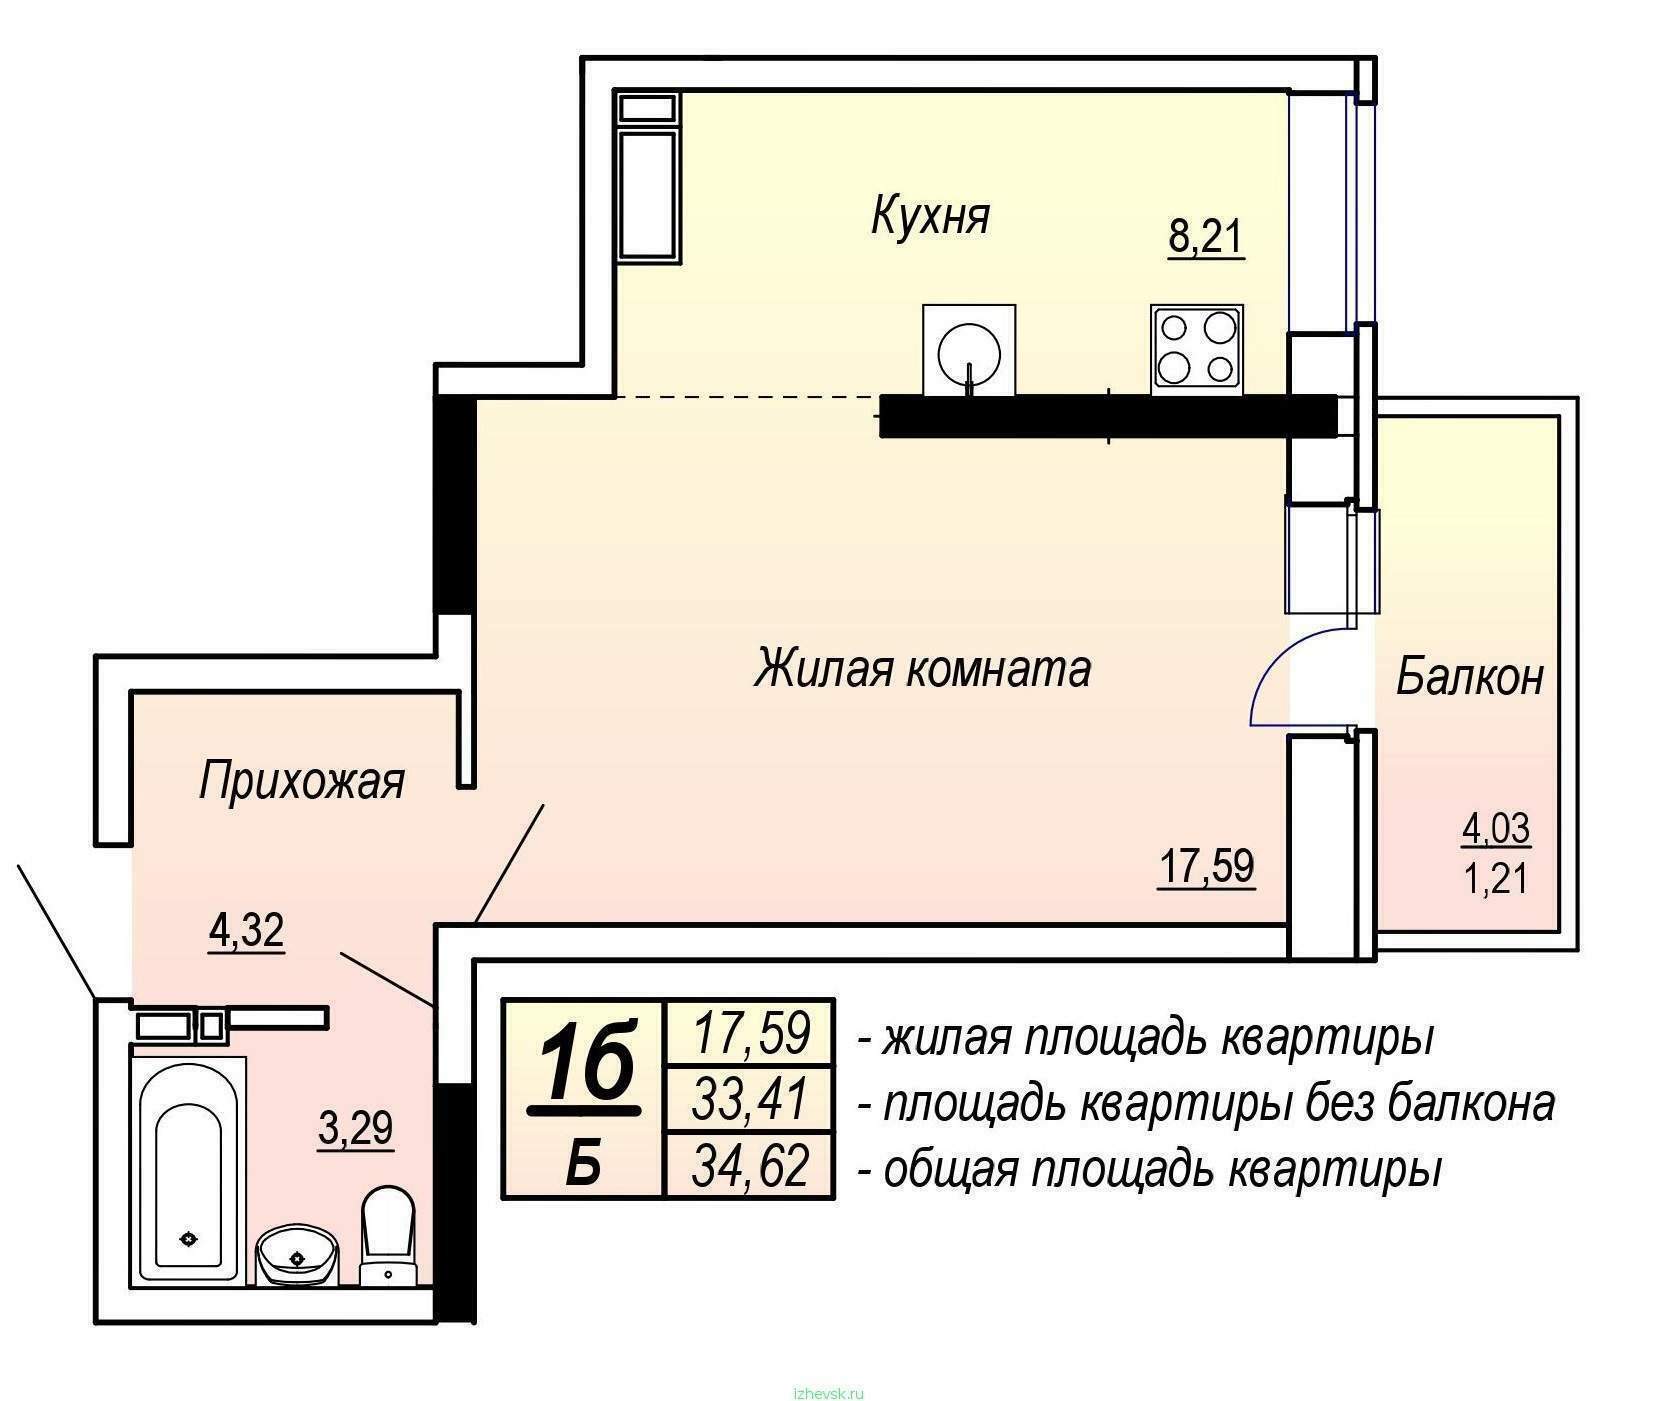 Дополнительная жилплощадь. Общая площадь квартиры. Жилая площадь квартиры и общая площадь. Жилая площадь квартиры это. Общая площадь квартиры на плане.